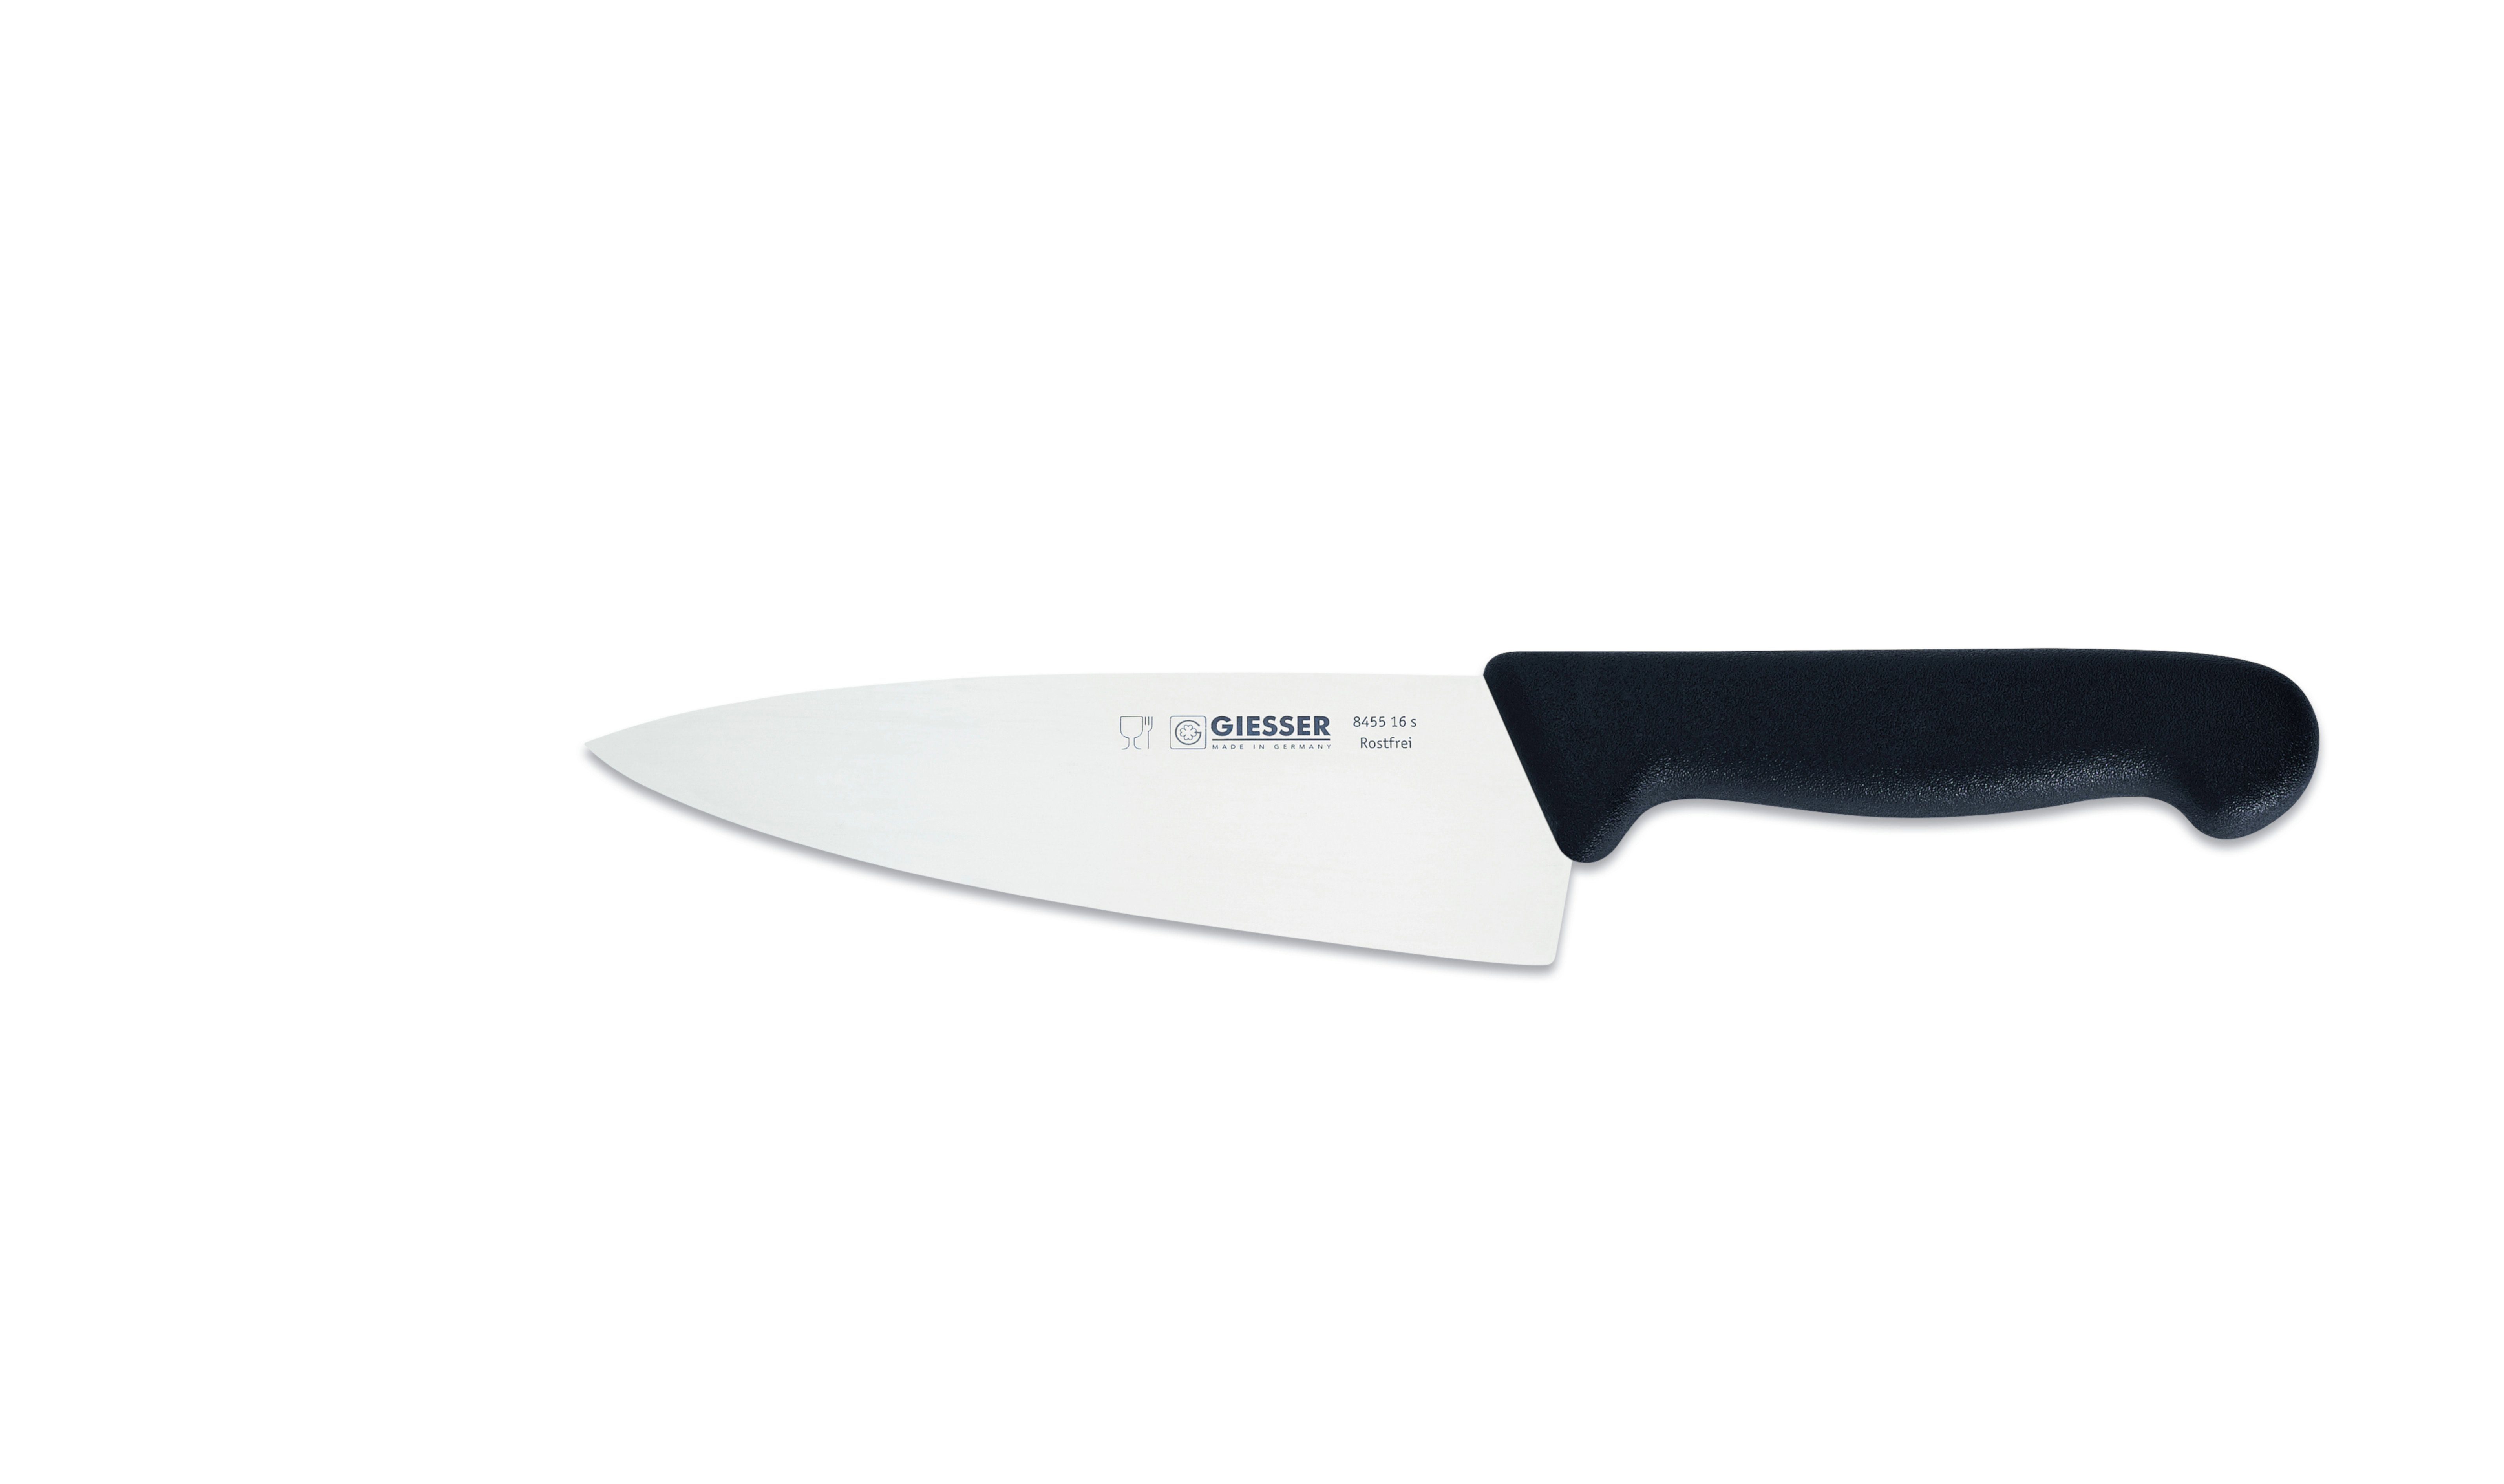 Giesser Messer Ideal scharf, Form, schwarz jede breite Küche breit Rostfrei, Handabzug, Küchenmesser für 8455, Kochmesser